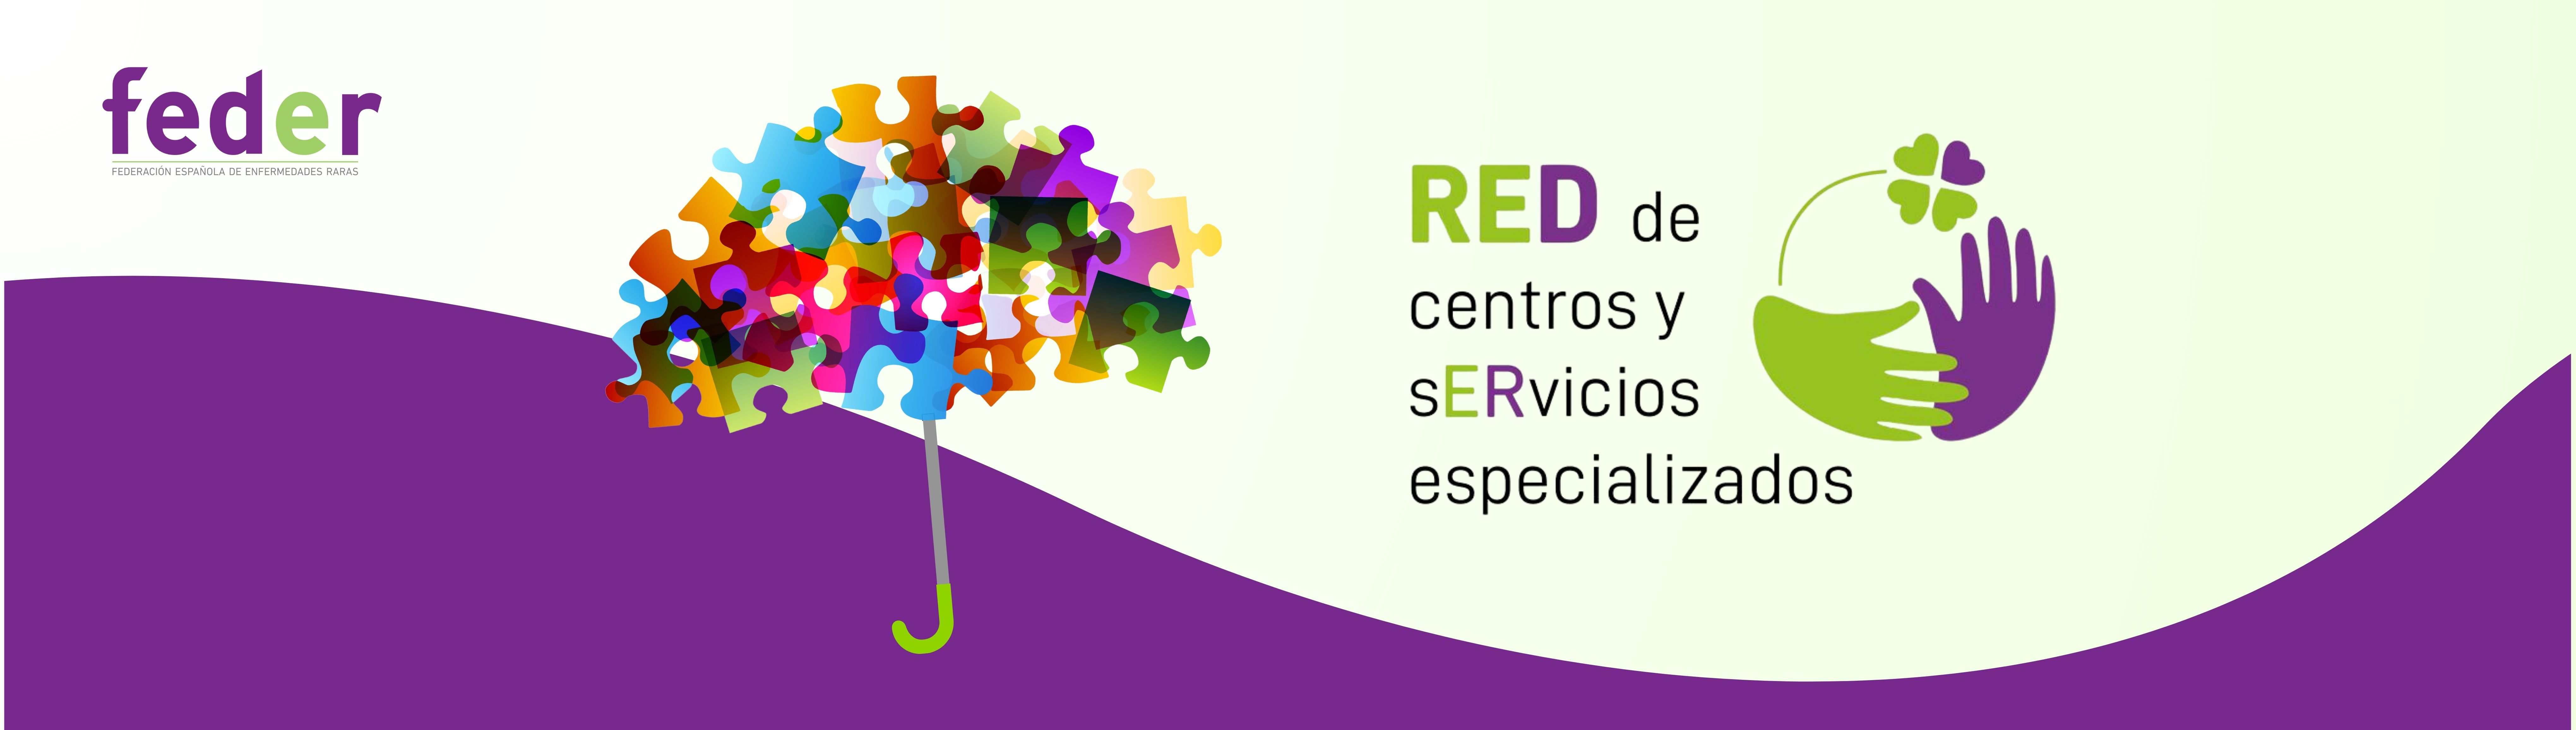 Imagen creativa de la Red de Centros y Servicios Especializados donde aparece el logo de FEDER, un paraguas formado por piezas de puzle y dos manos ayudándose.